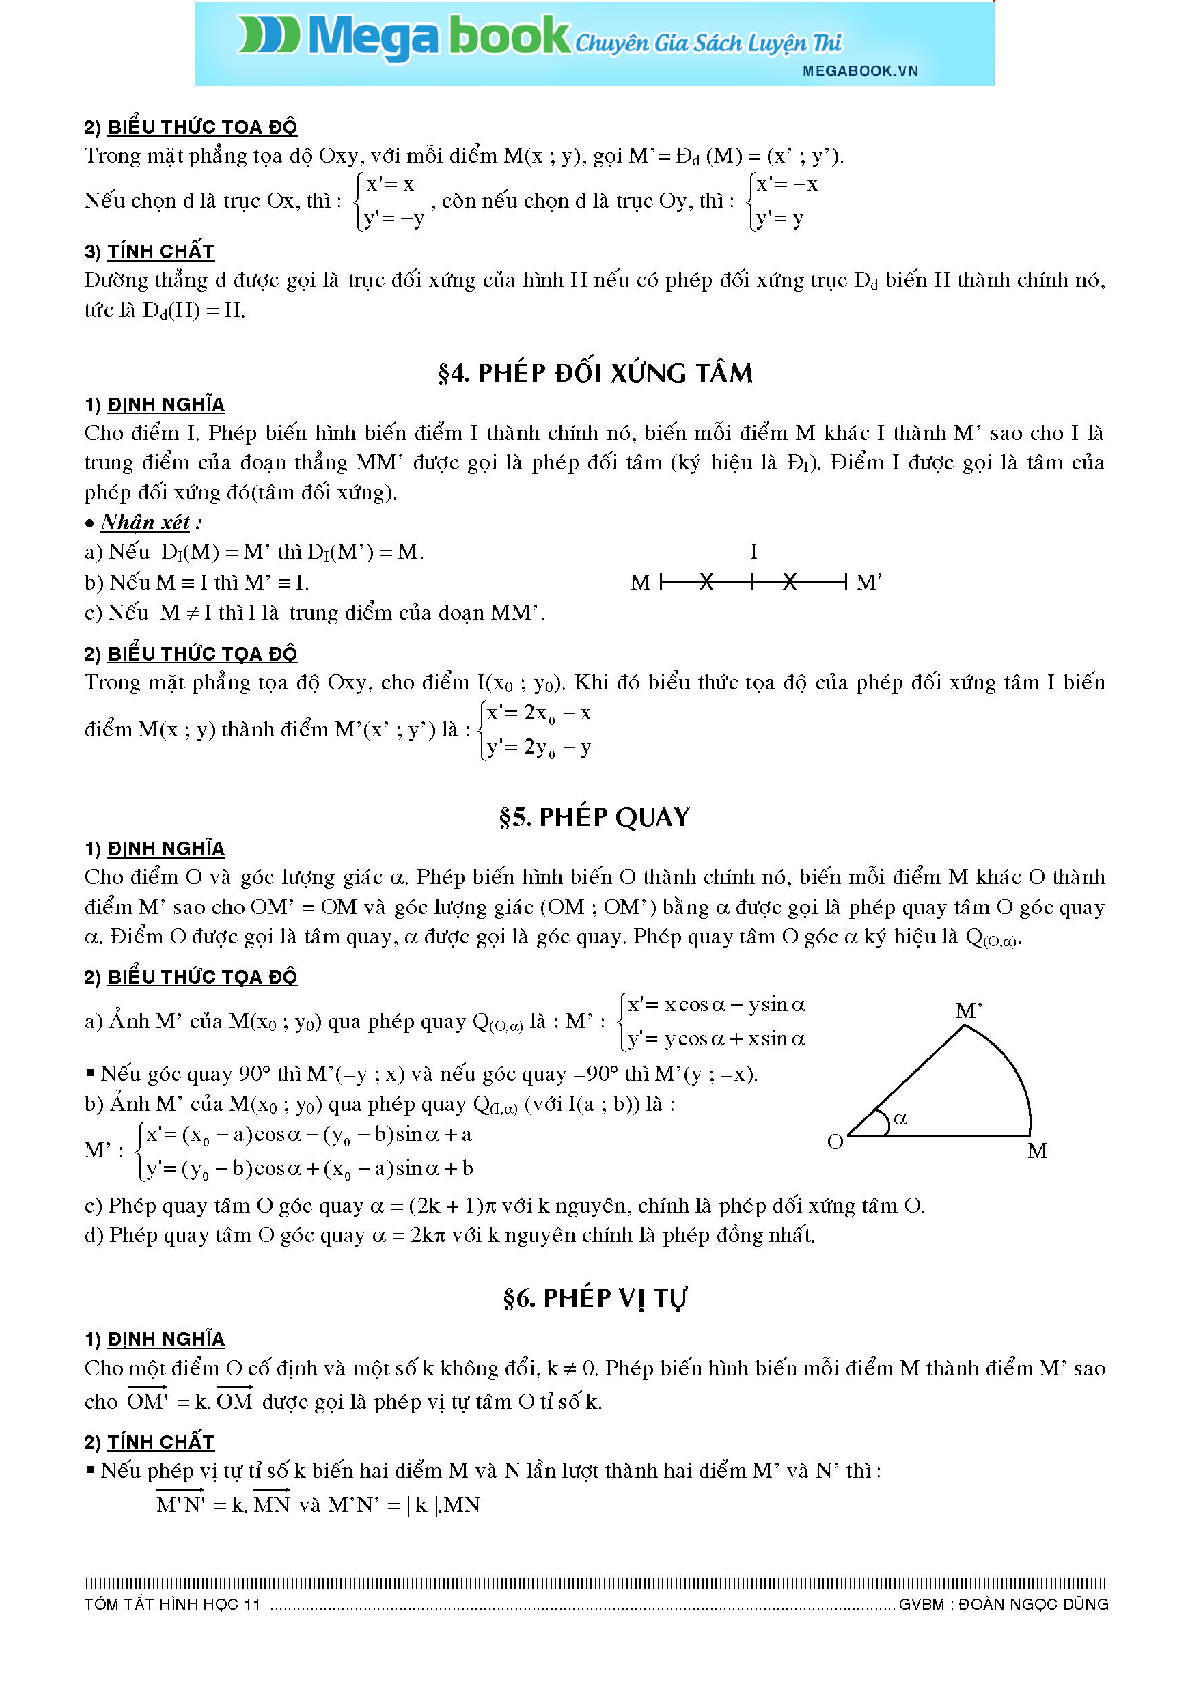 Lý thuyết hình học môn Toán lớp 11 đầy đủ nhất (trang 2)